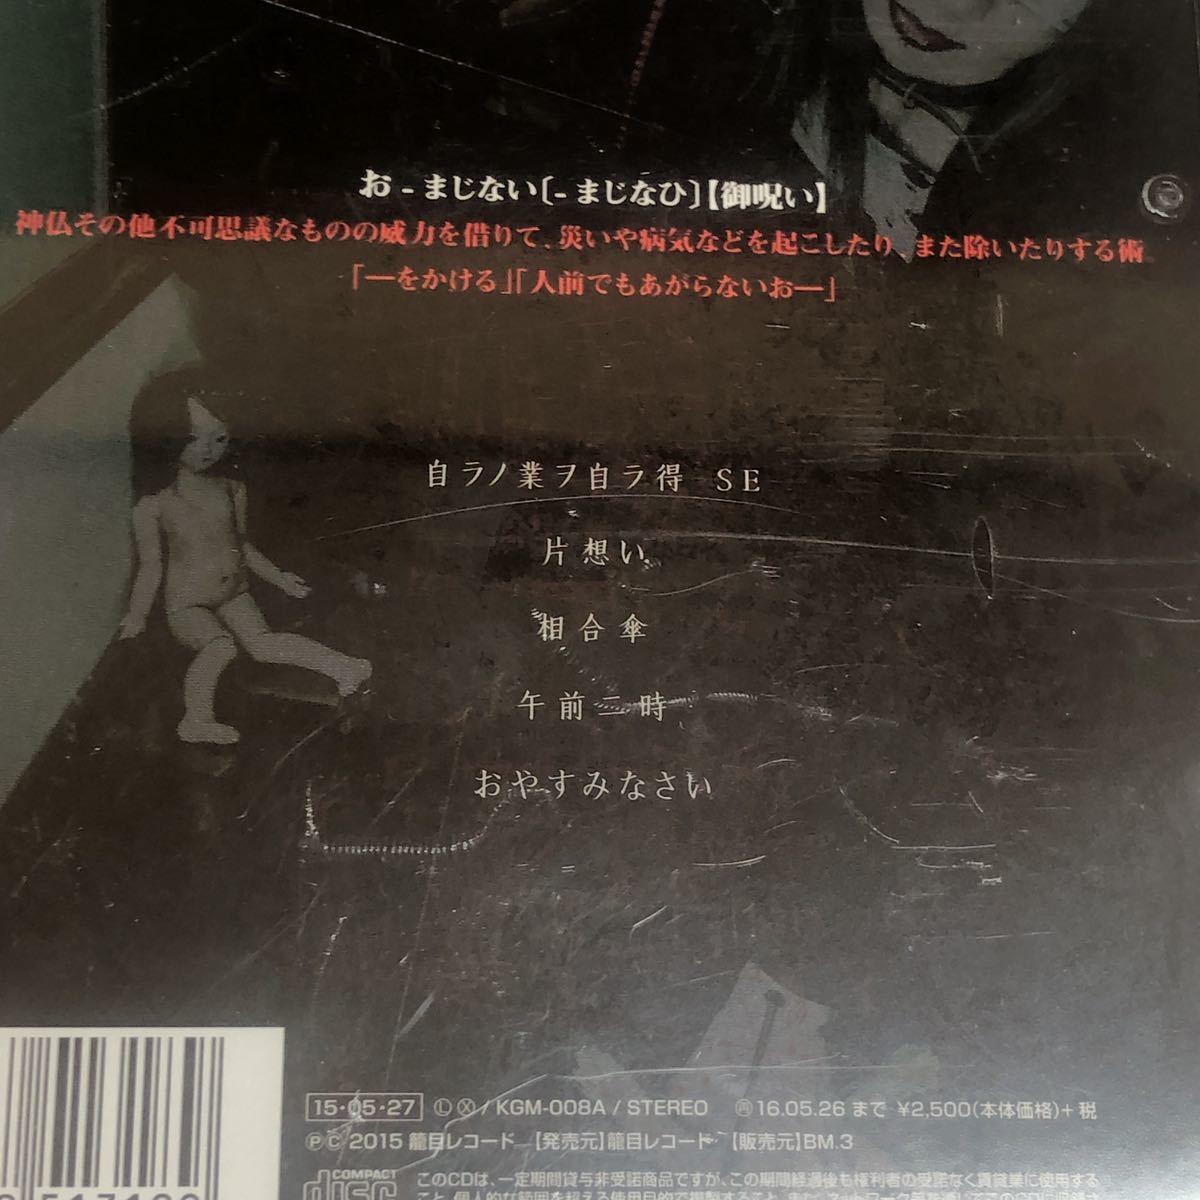 レコード ジャパメタ、ヴィジュアル系 レコードCDセット sGhqu